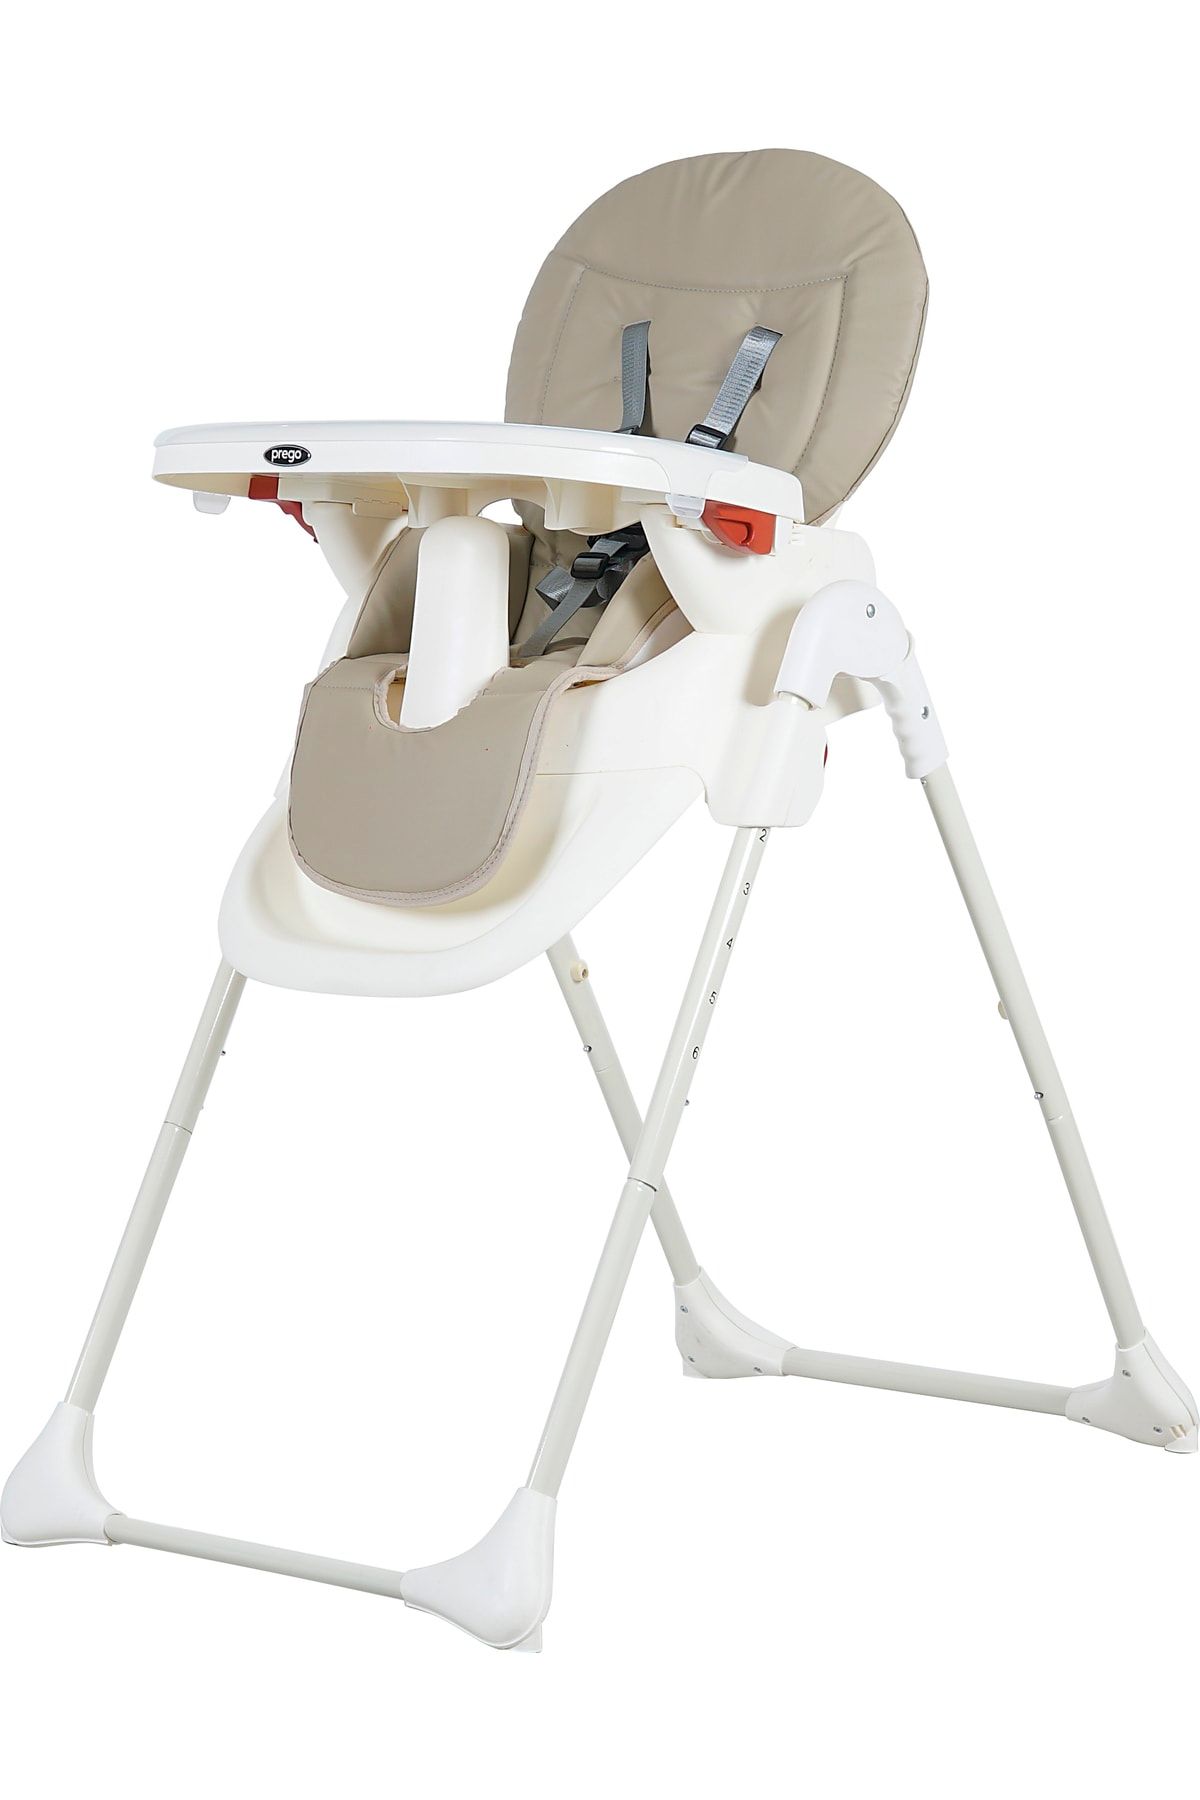 Prego 3034 Pino Mama Sandalyesi Pratik Ve Hızlı Katlanabilir Kullanışlı Ve Geniş Mama Tablası